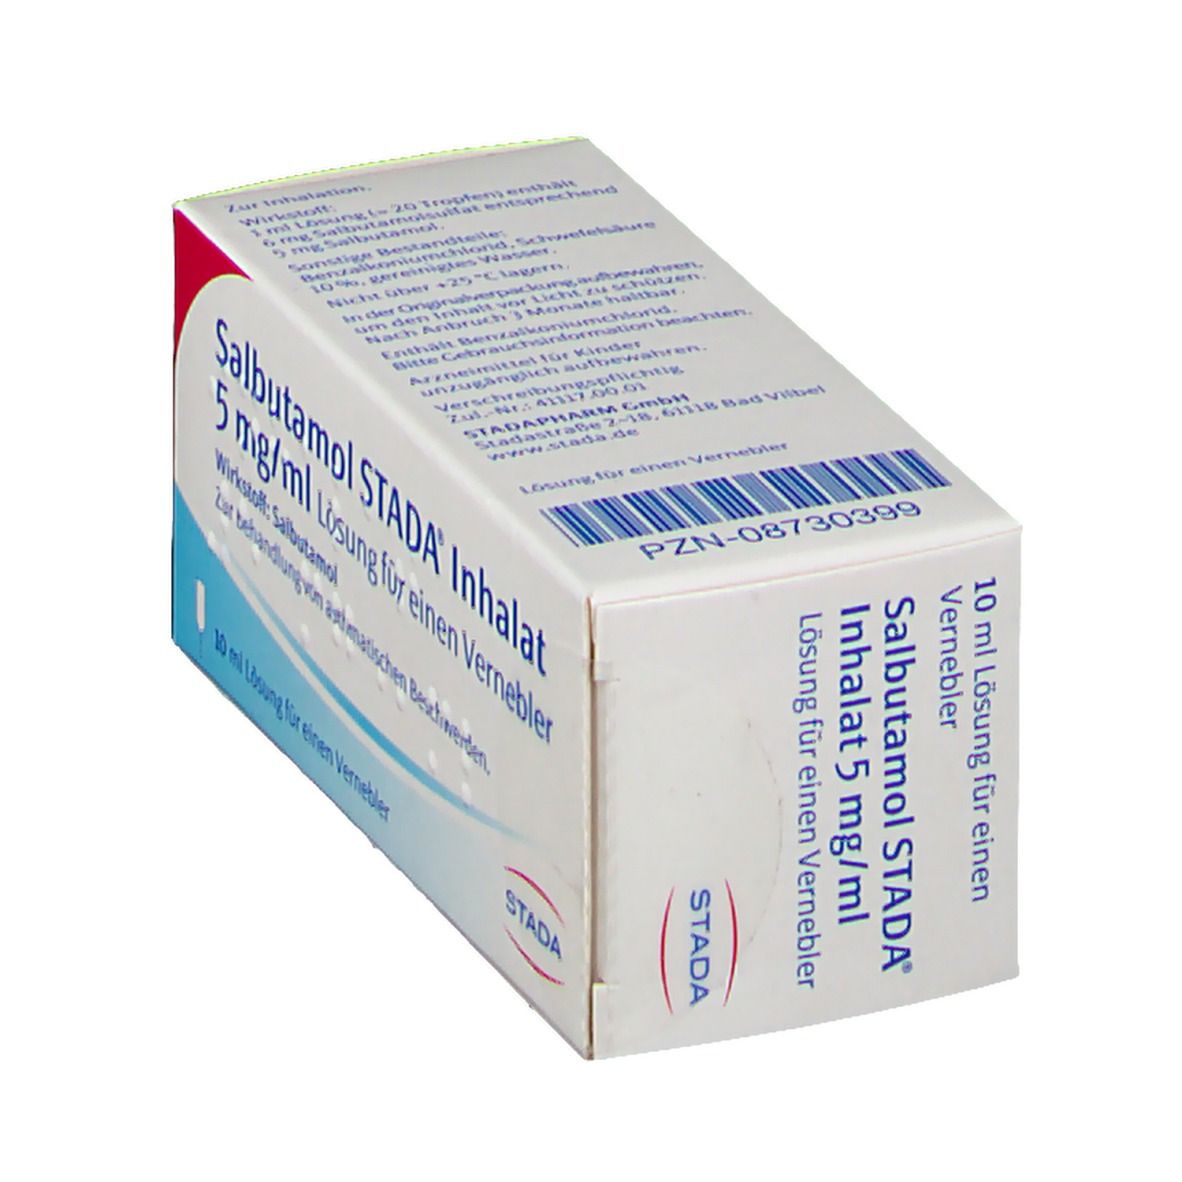 Salbutamol STADA® Inhalat 5 mg/ml